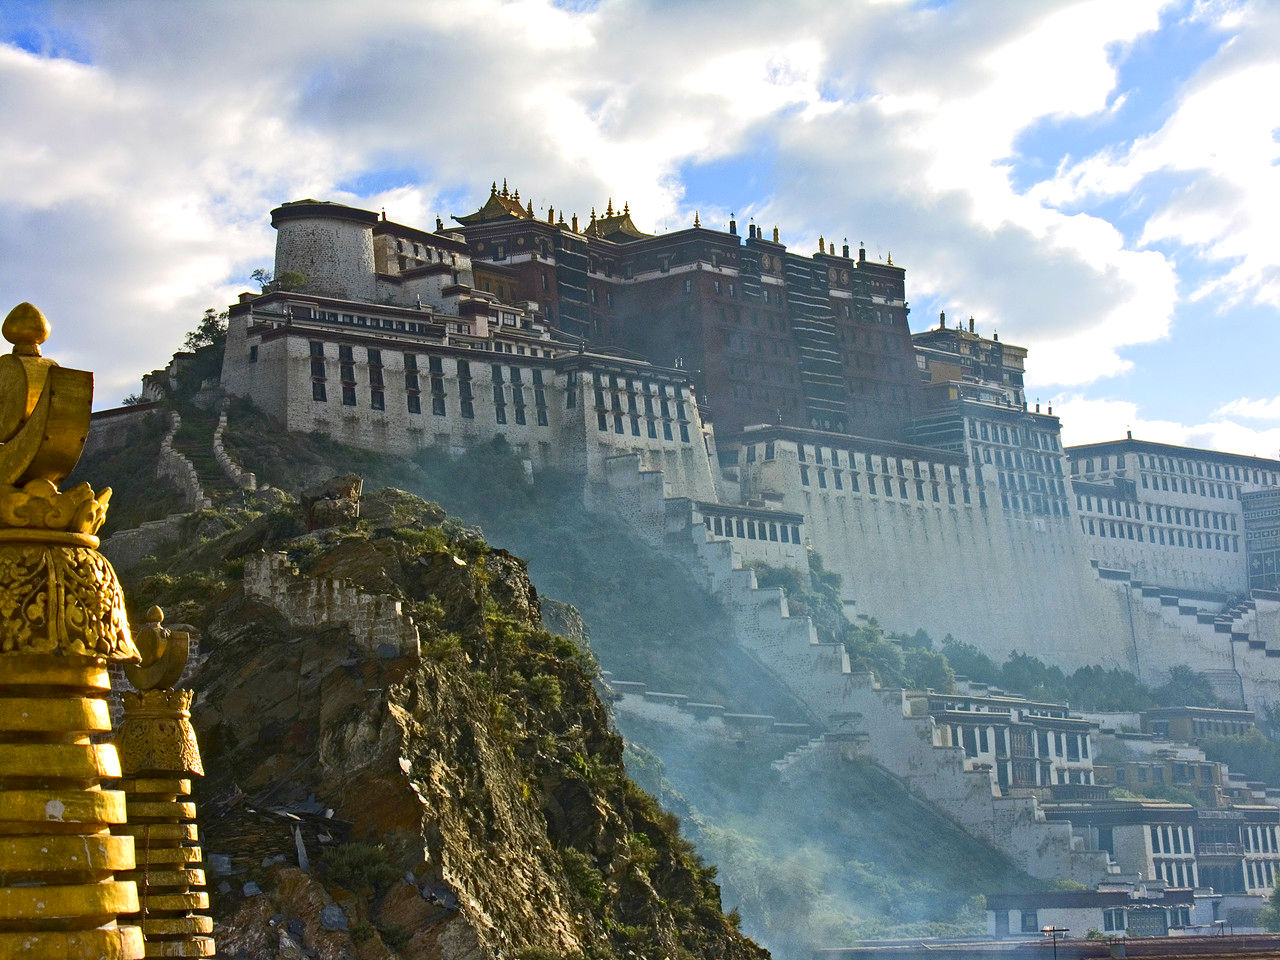 Potala Palace, Winter Palace Of The Dalai Lama - Potala Palace , HD Wallpaper & Backgrounds